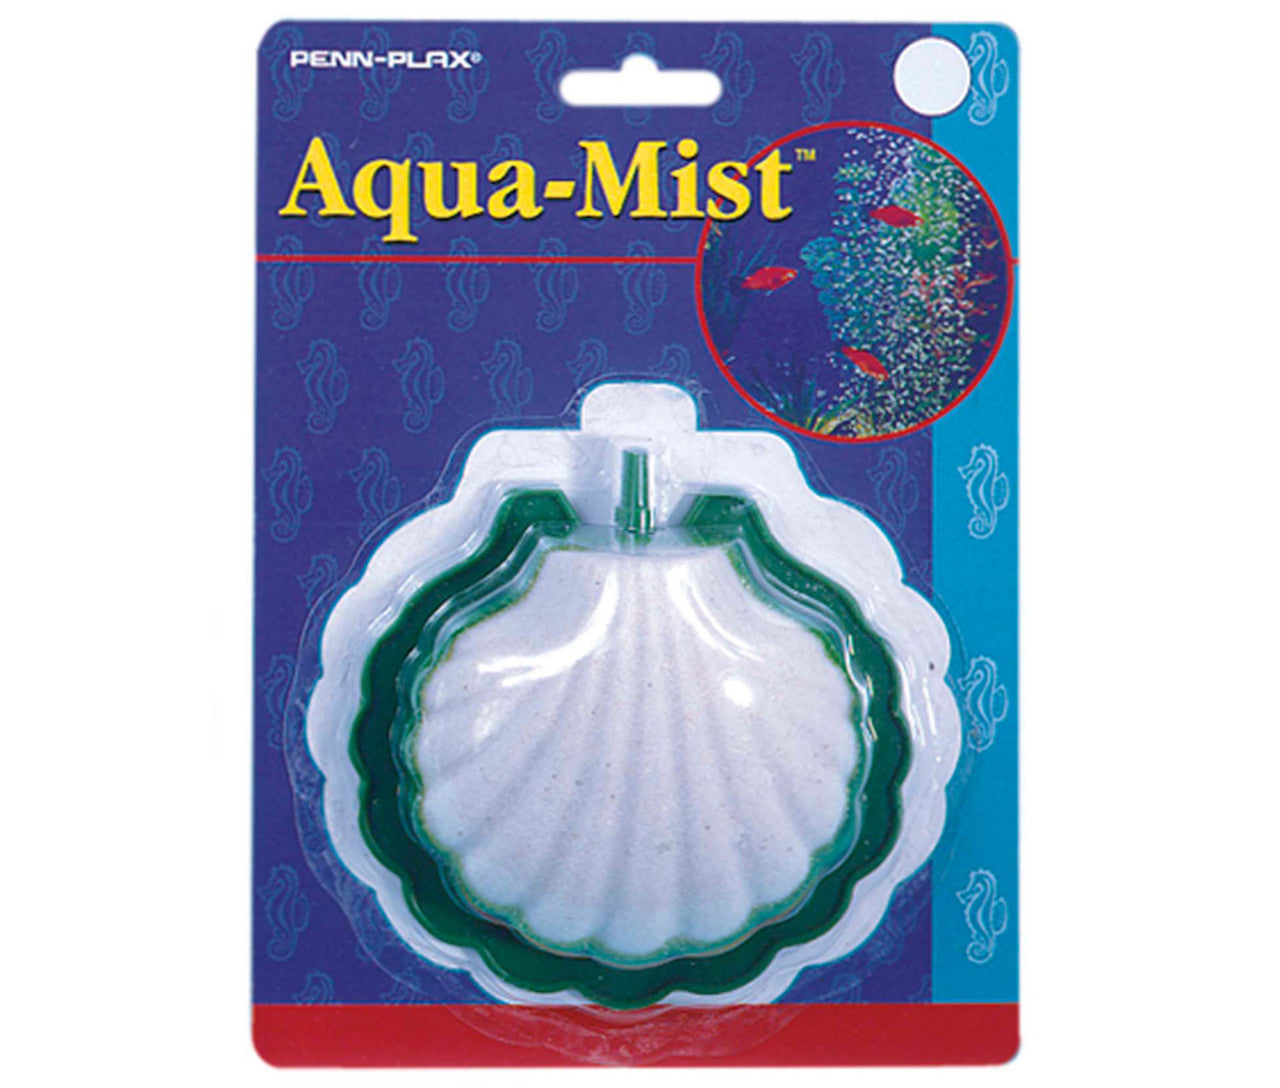 Penn-Plax Aqua-Mist Air Stone Shell White, Green